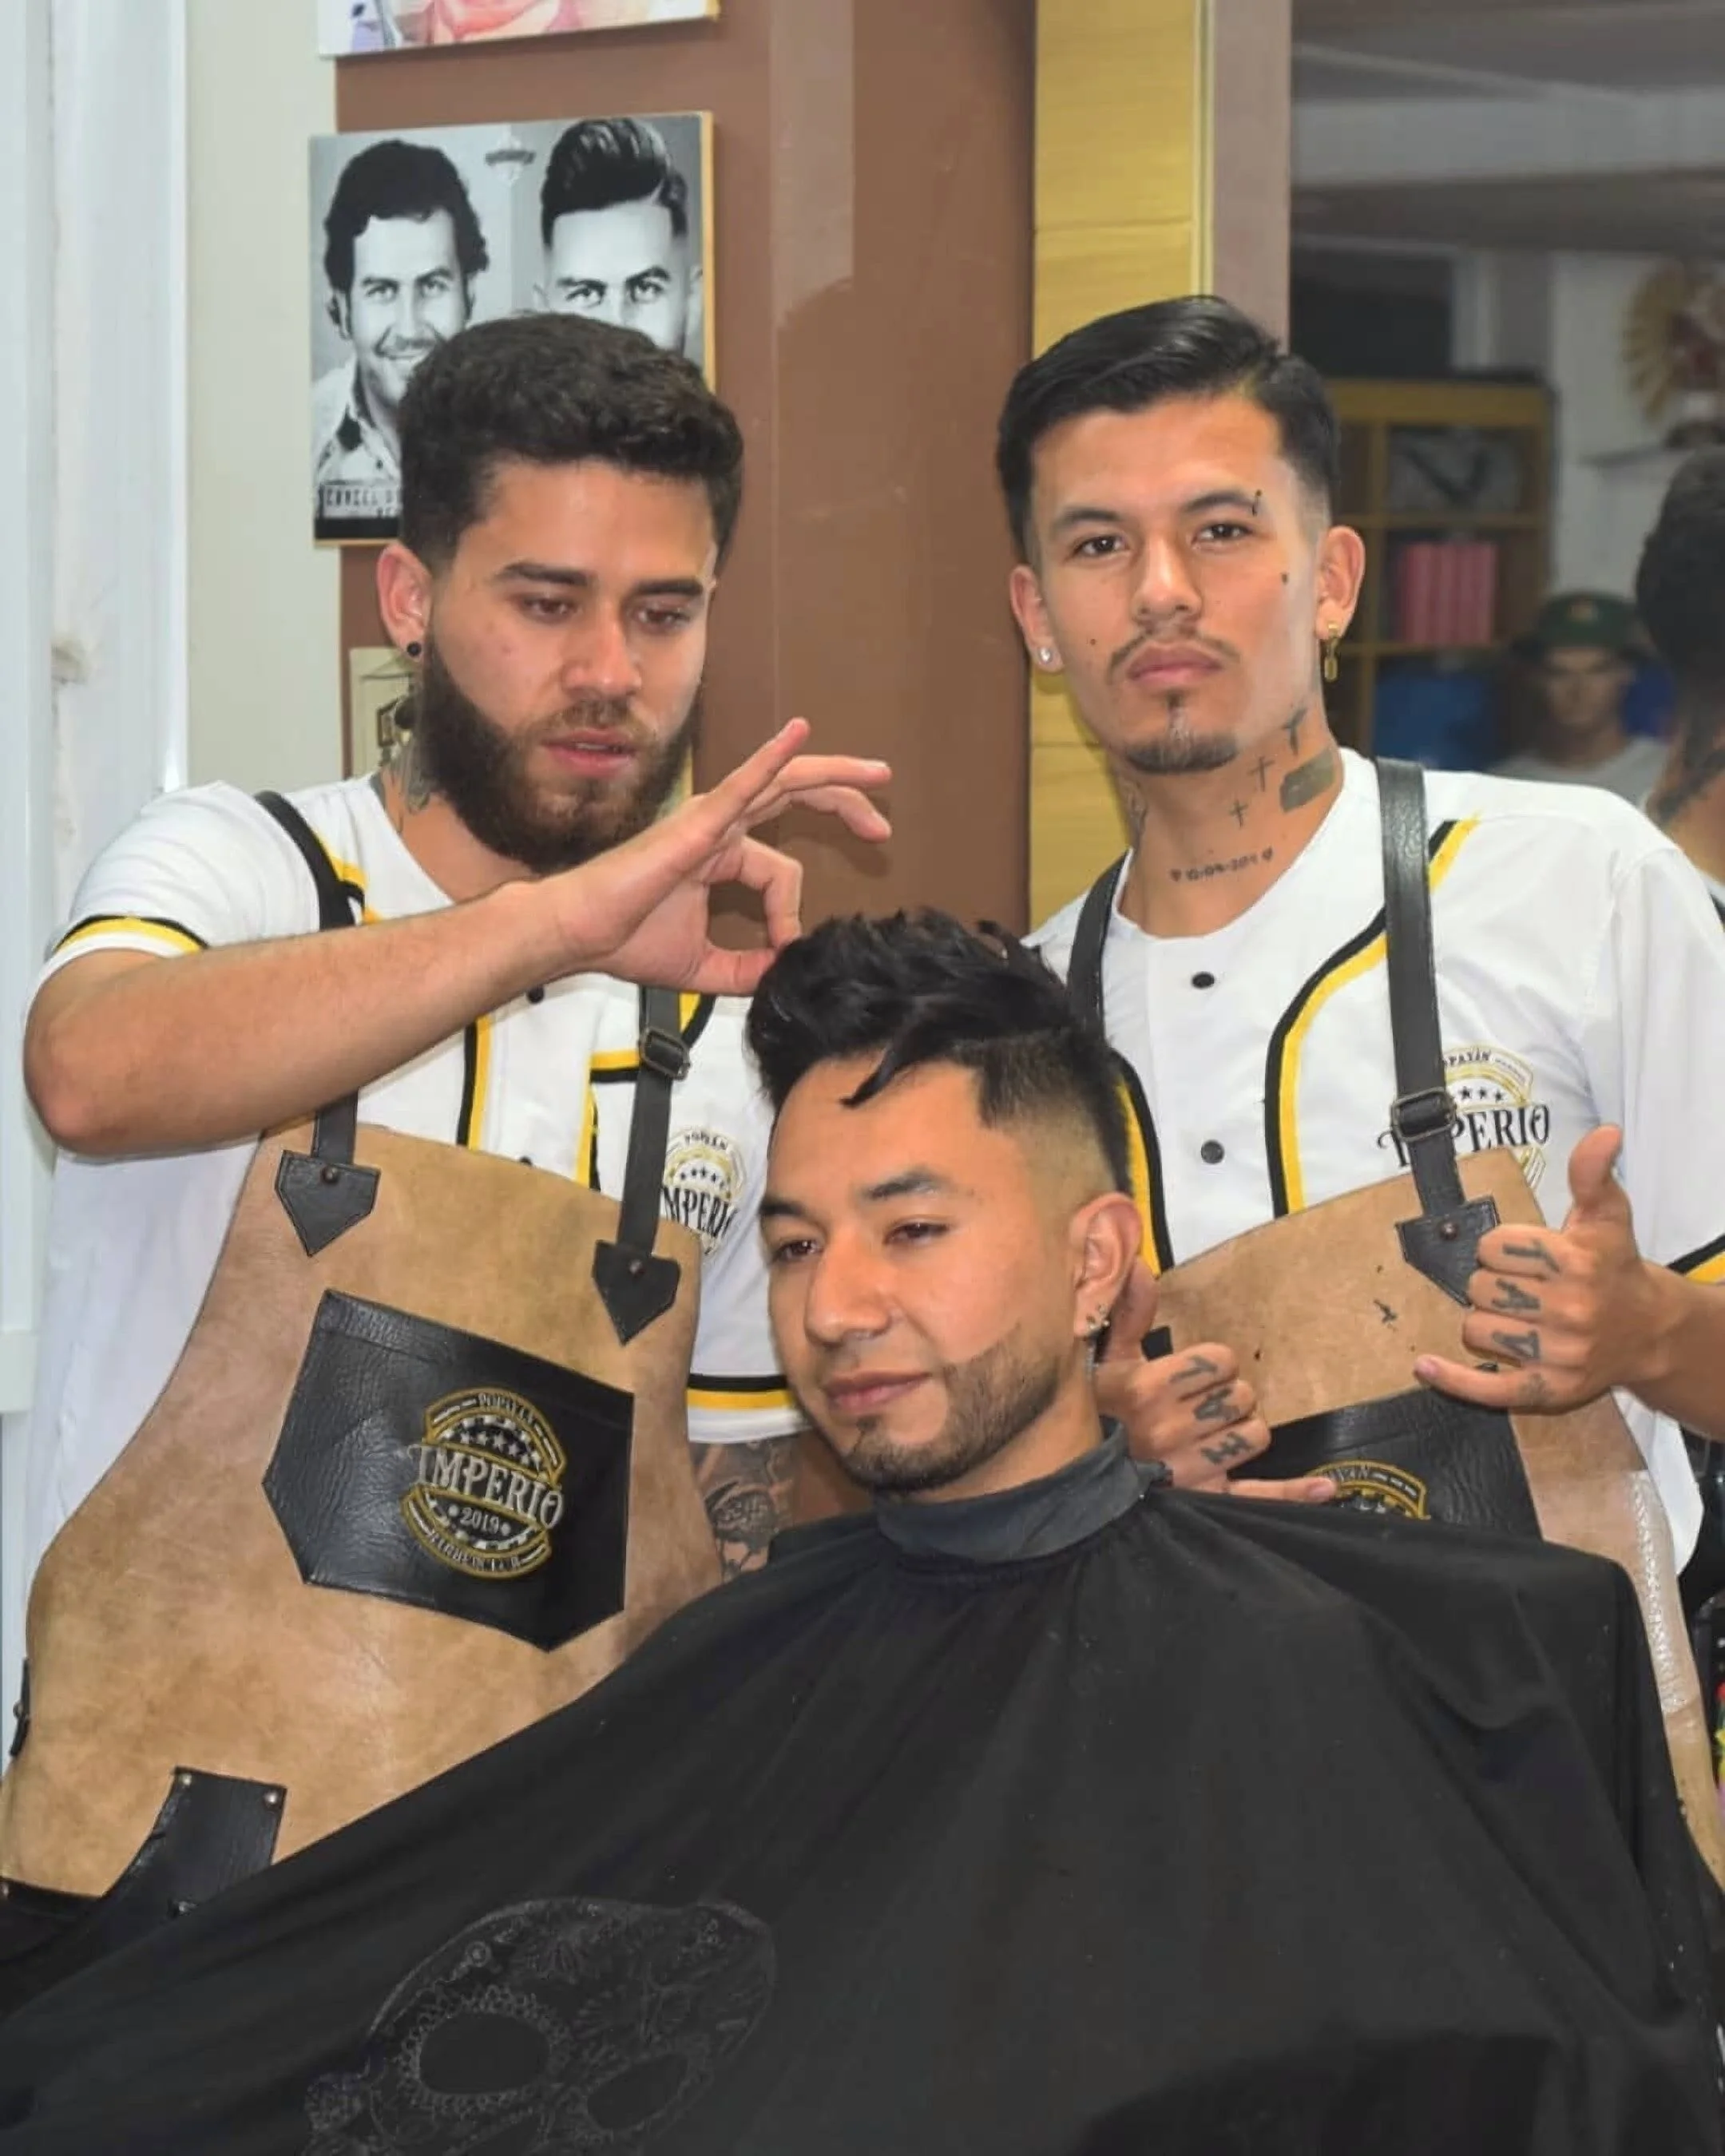 Barbería-imperio-barber-club-popayan-9186